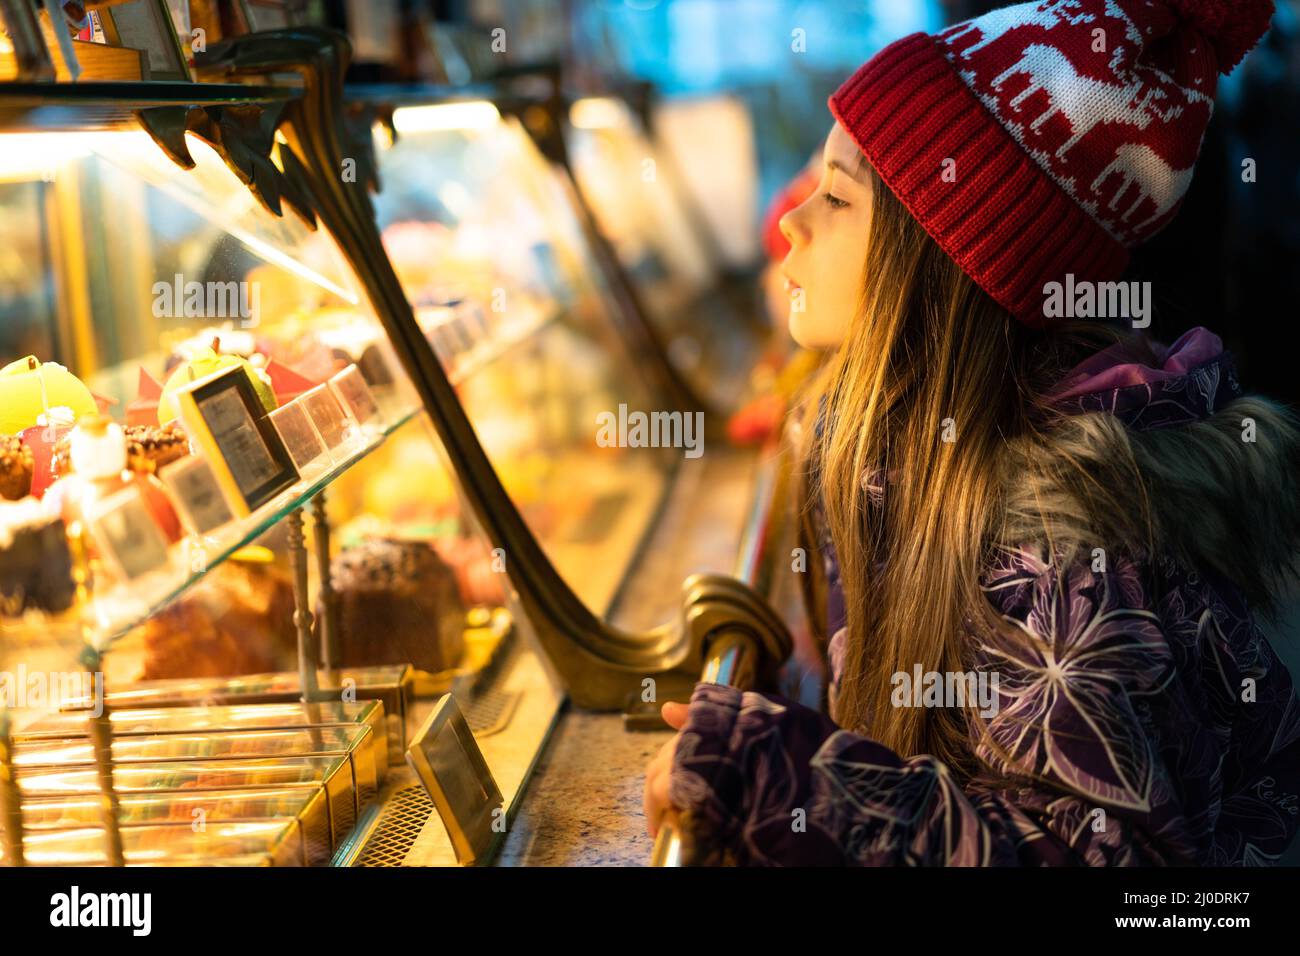 Ein Kind in Winterkleidung und einem weihnachtlichen roten Hut wählt Süßigkeiten in einem Schaufenster aus, um sie zu kaufen. Das Konzept der Neujahrsferien, Rabatte, Shopping. Stockfoto